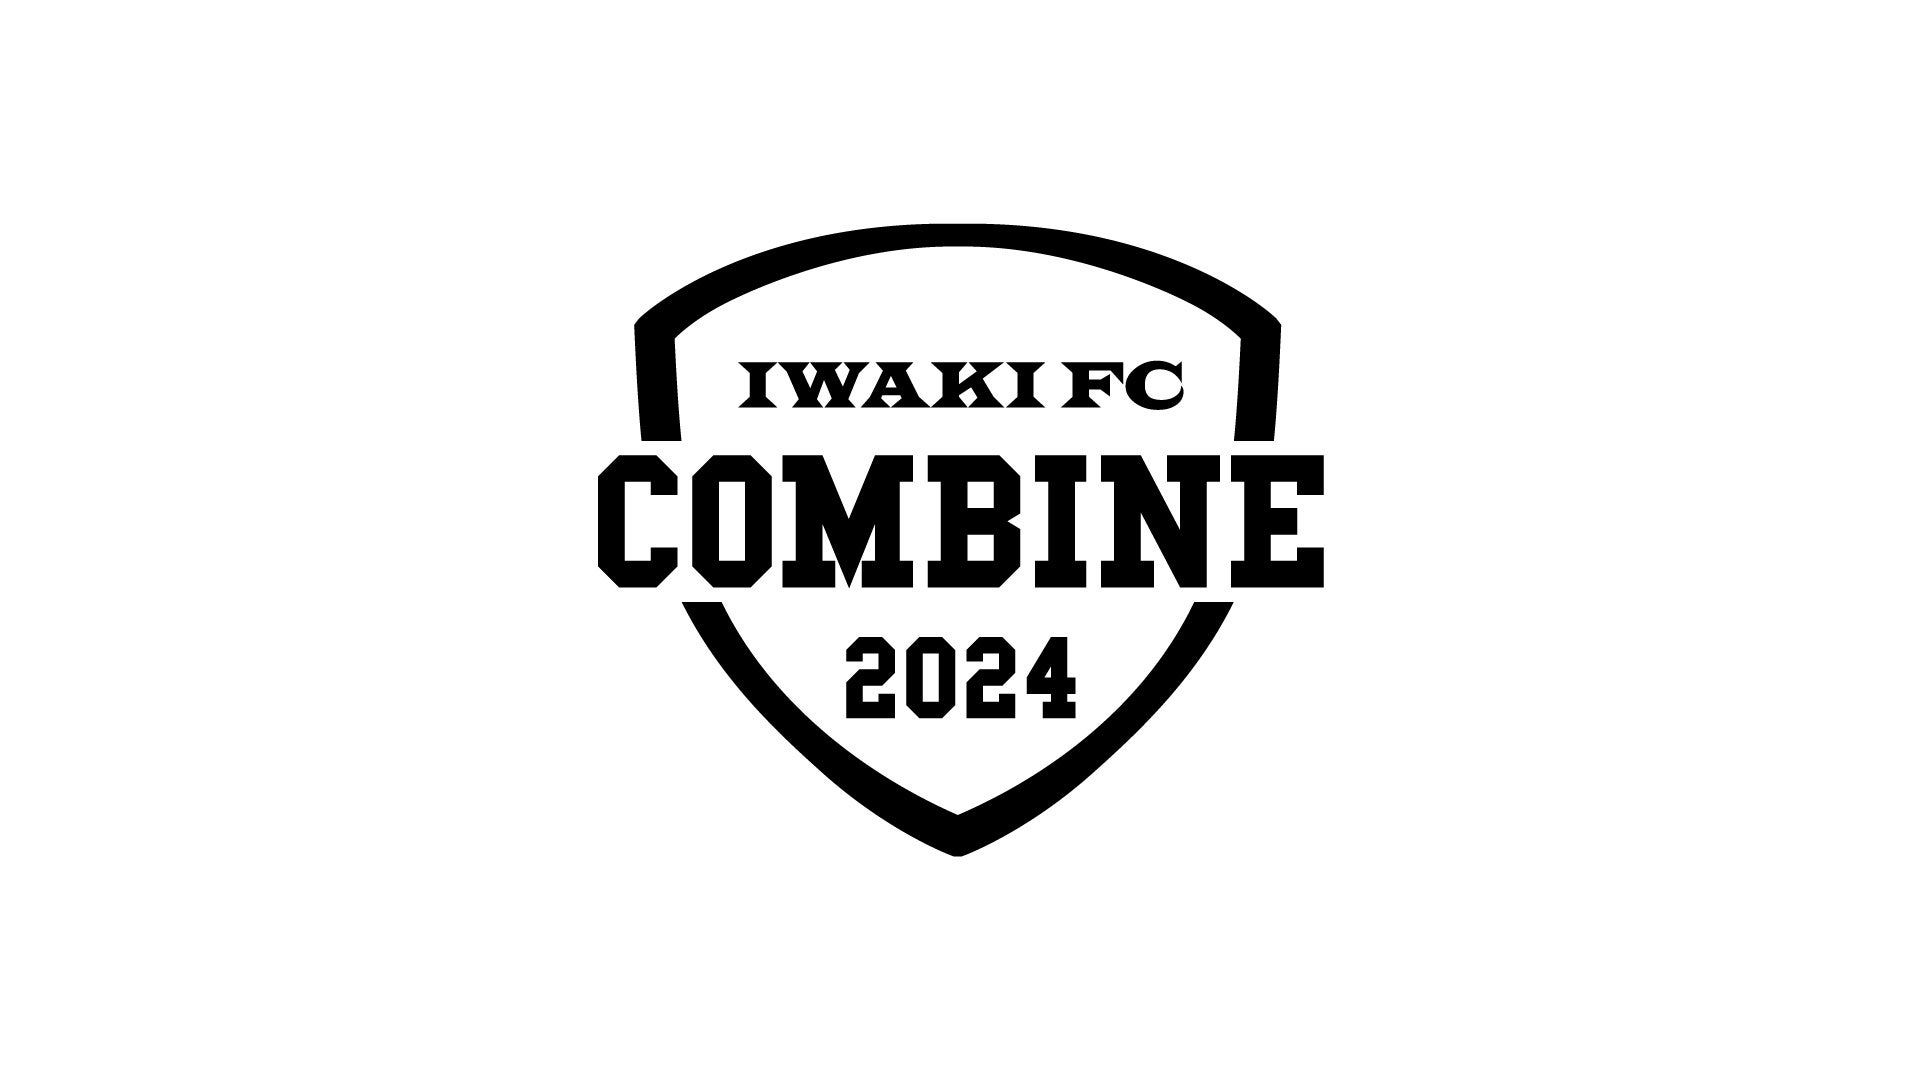 【いわきFC】2024 いわきFC U-18コンバイン 開催のお知らせ